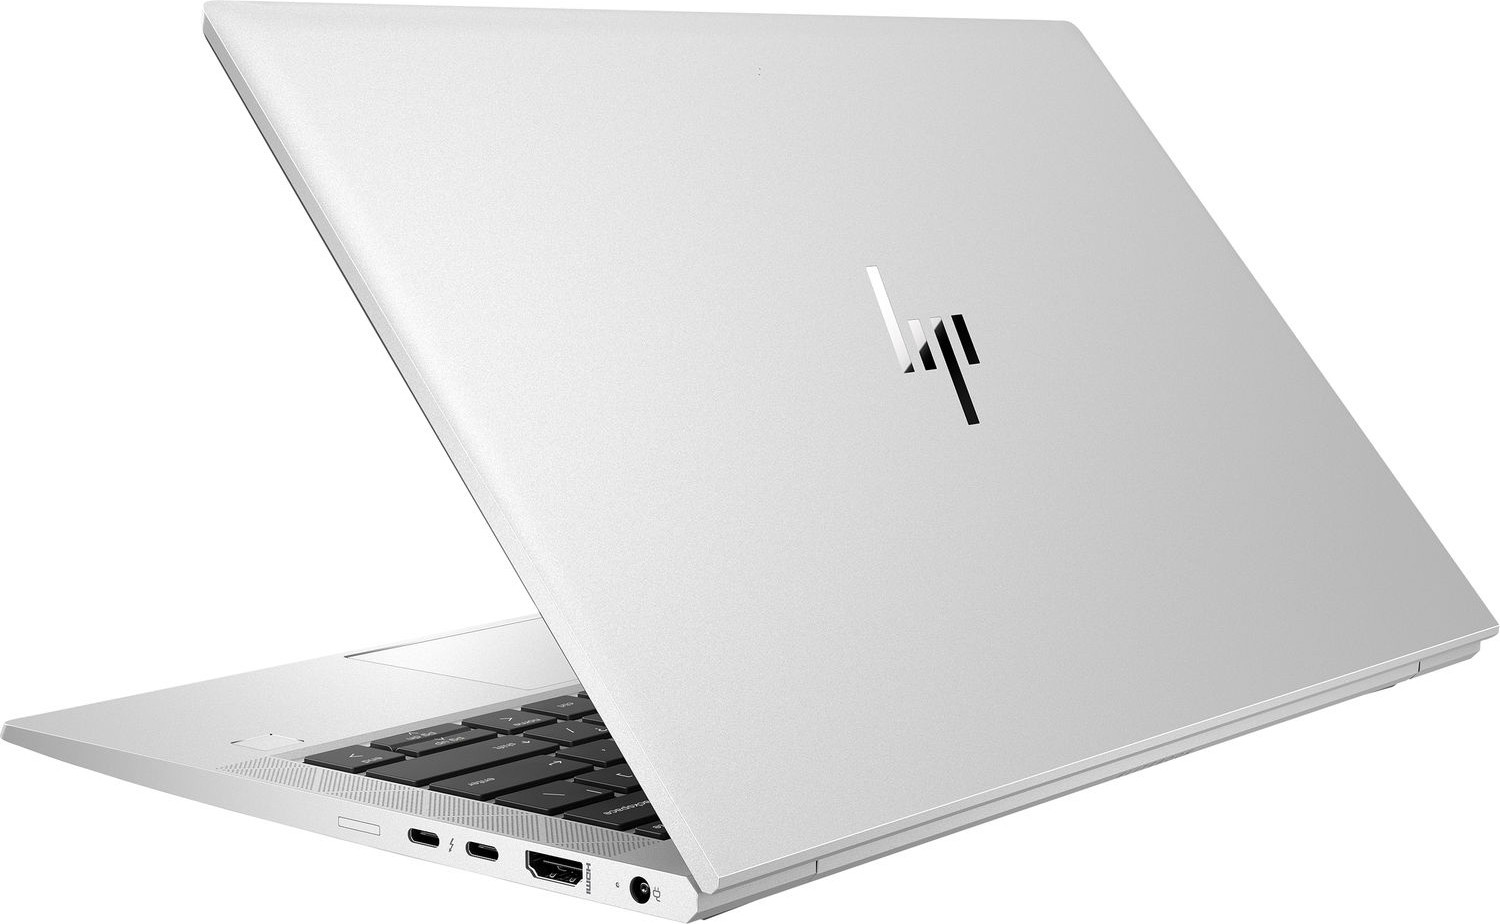 Ноутбук HP EliteBook 830 G7 Intel Core i5-10210U 1.6GHz,13.3" FHD (1920x1080) IPS 400cd LP IR ALS AG,8Gb DDR4-2666MHz(1),256Gb SSD NVMe,Al Case,53Wh,FPS,Kbd Backlit,1.24kg,Silver,3yw,Win10Pro-39330